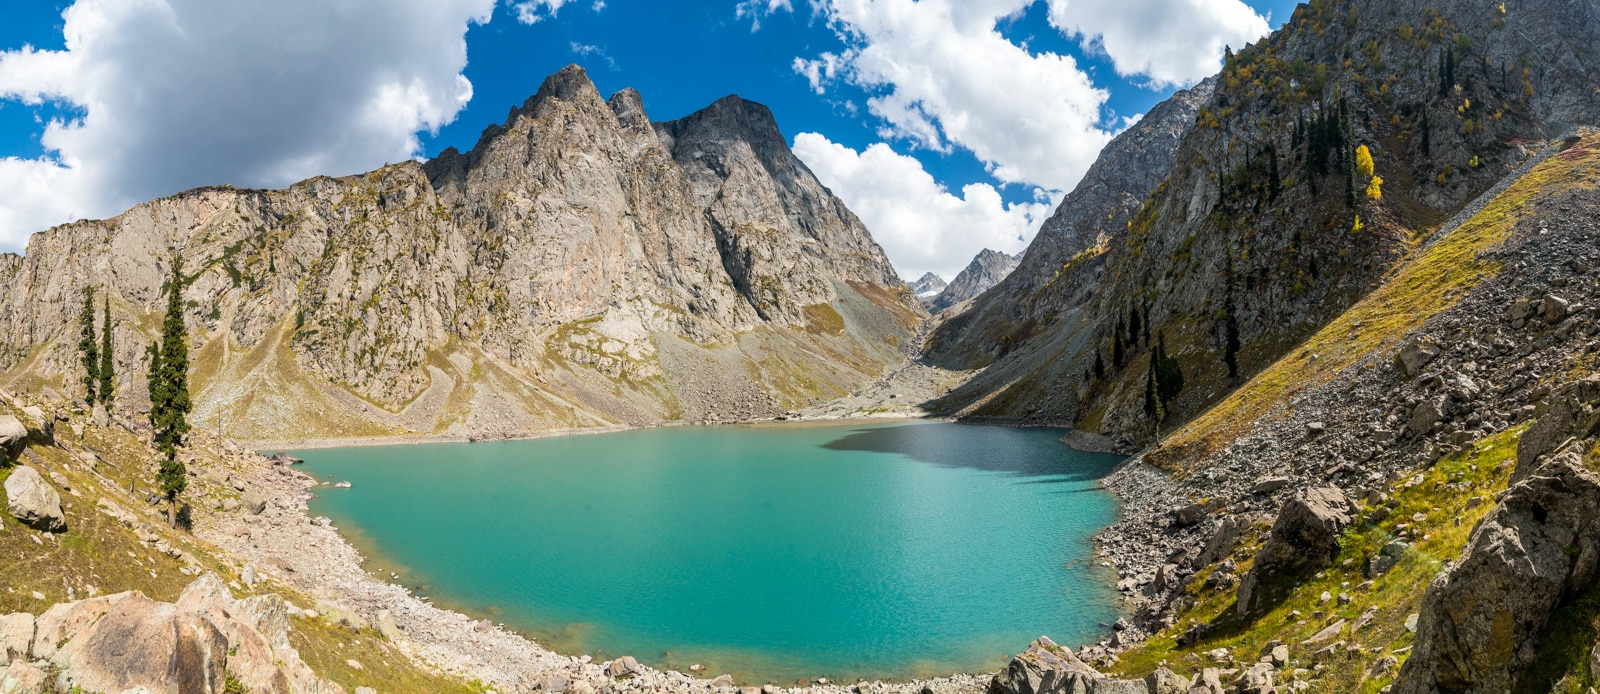 Trekking around Kalam, Swat Valley, Pakistan - Spinkhor Lake panorama - Lost With Purpose travel blog